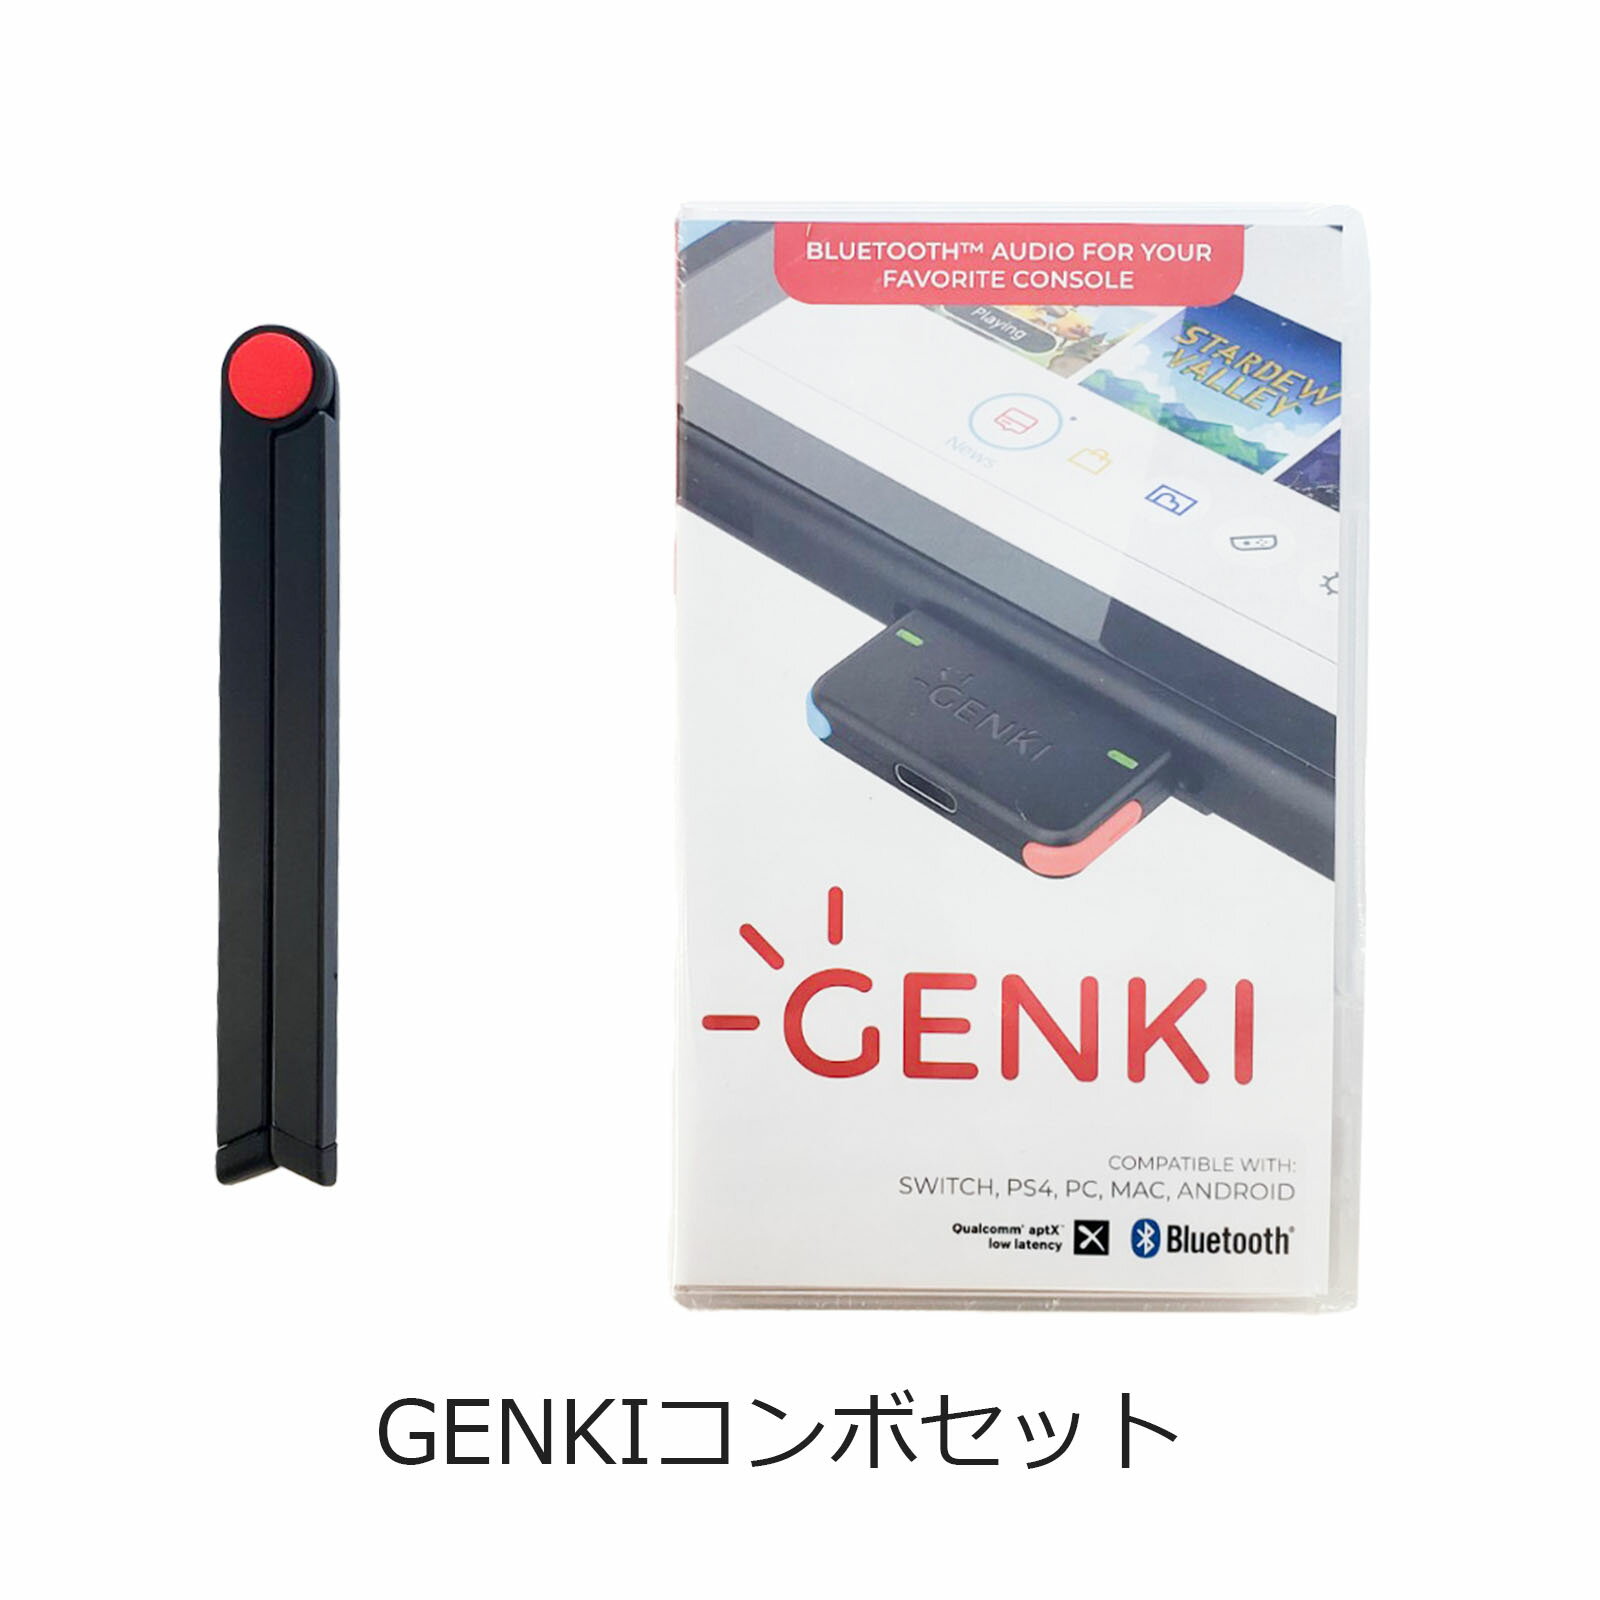 Genki Combo (ネオンブルー / ネオンレッド) ：Nintendo SwitchやPS4でワイヤレスヘッドホンが使える!